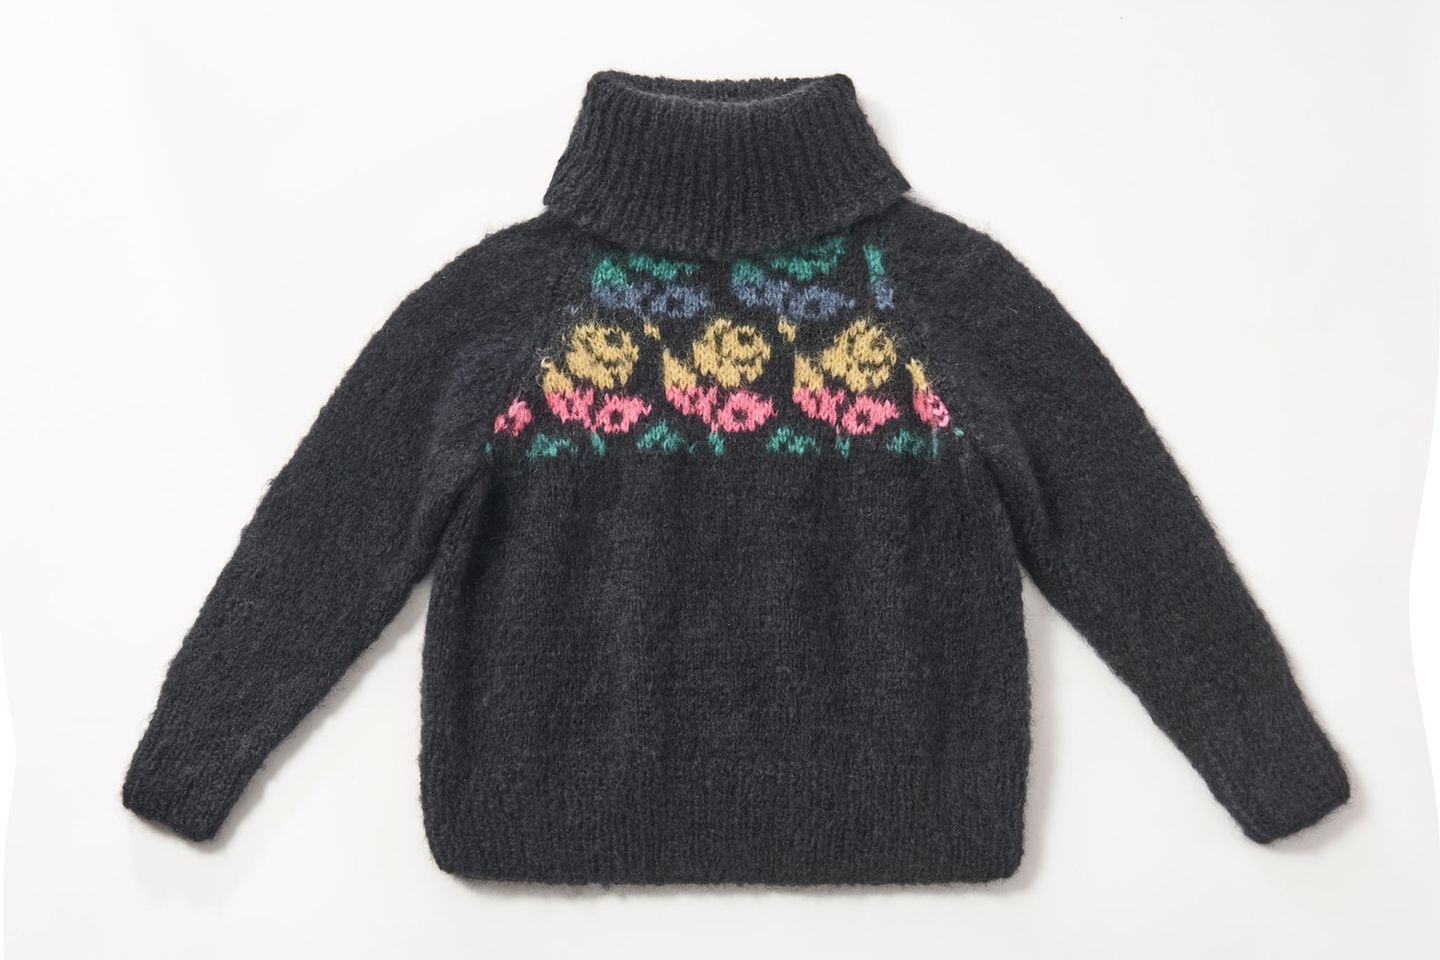 Rosenpullover stricken: dunkler Pullover mit Rollkragen und Rosenmuster